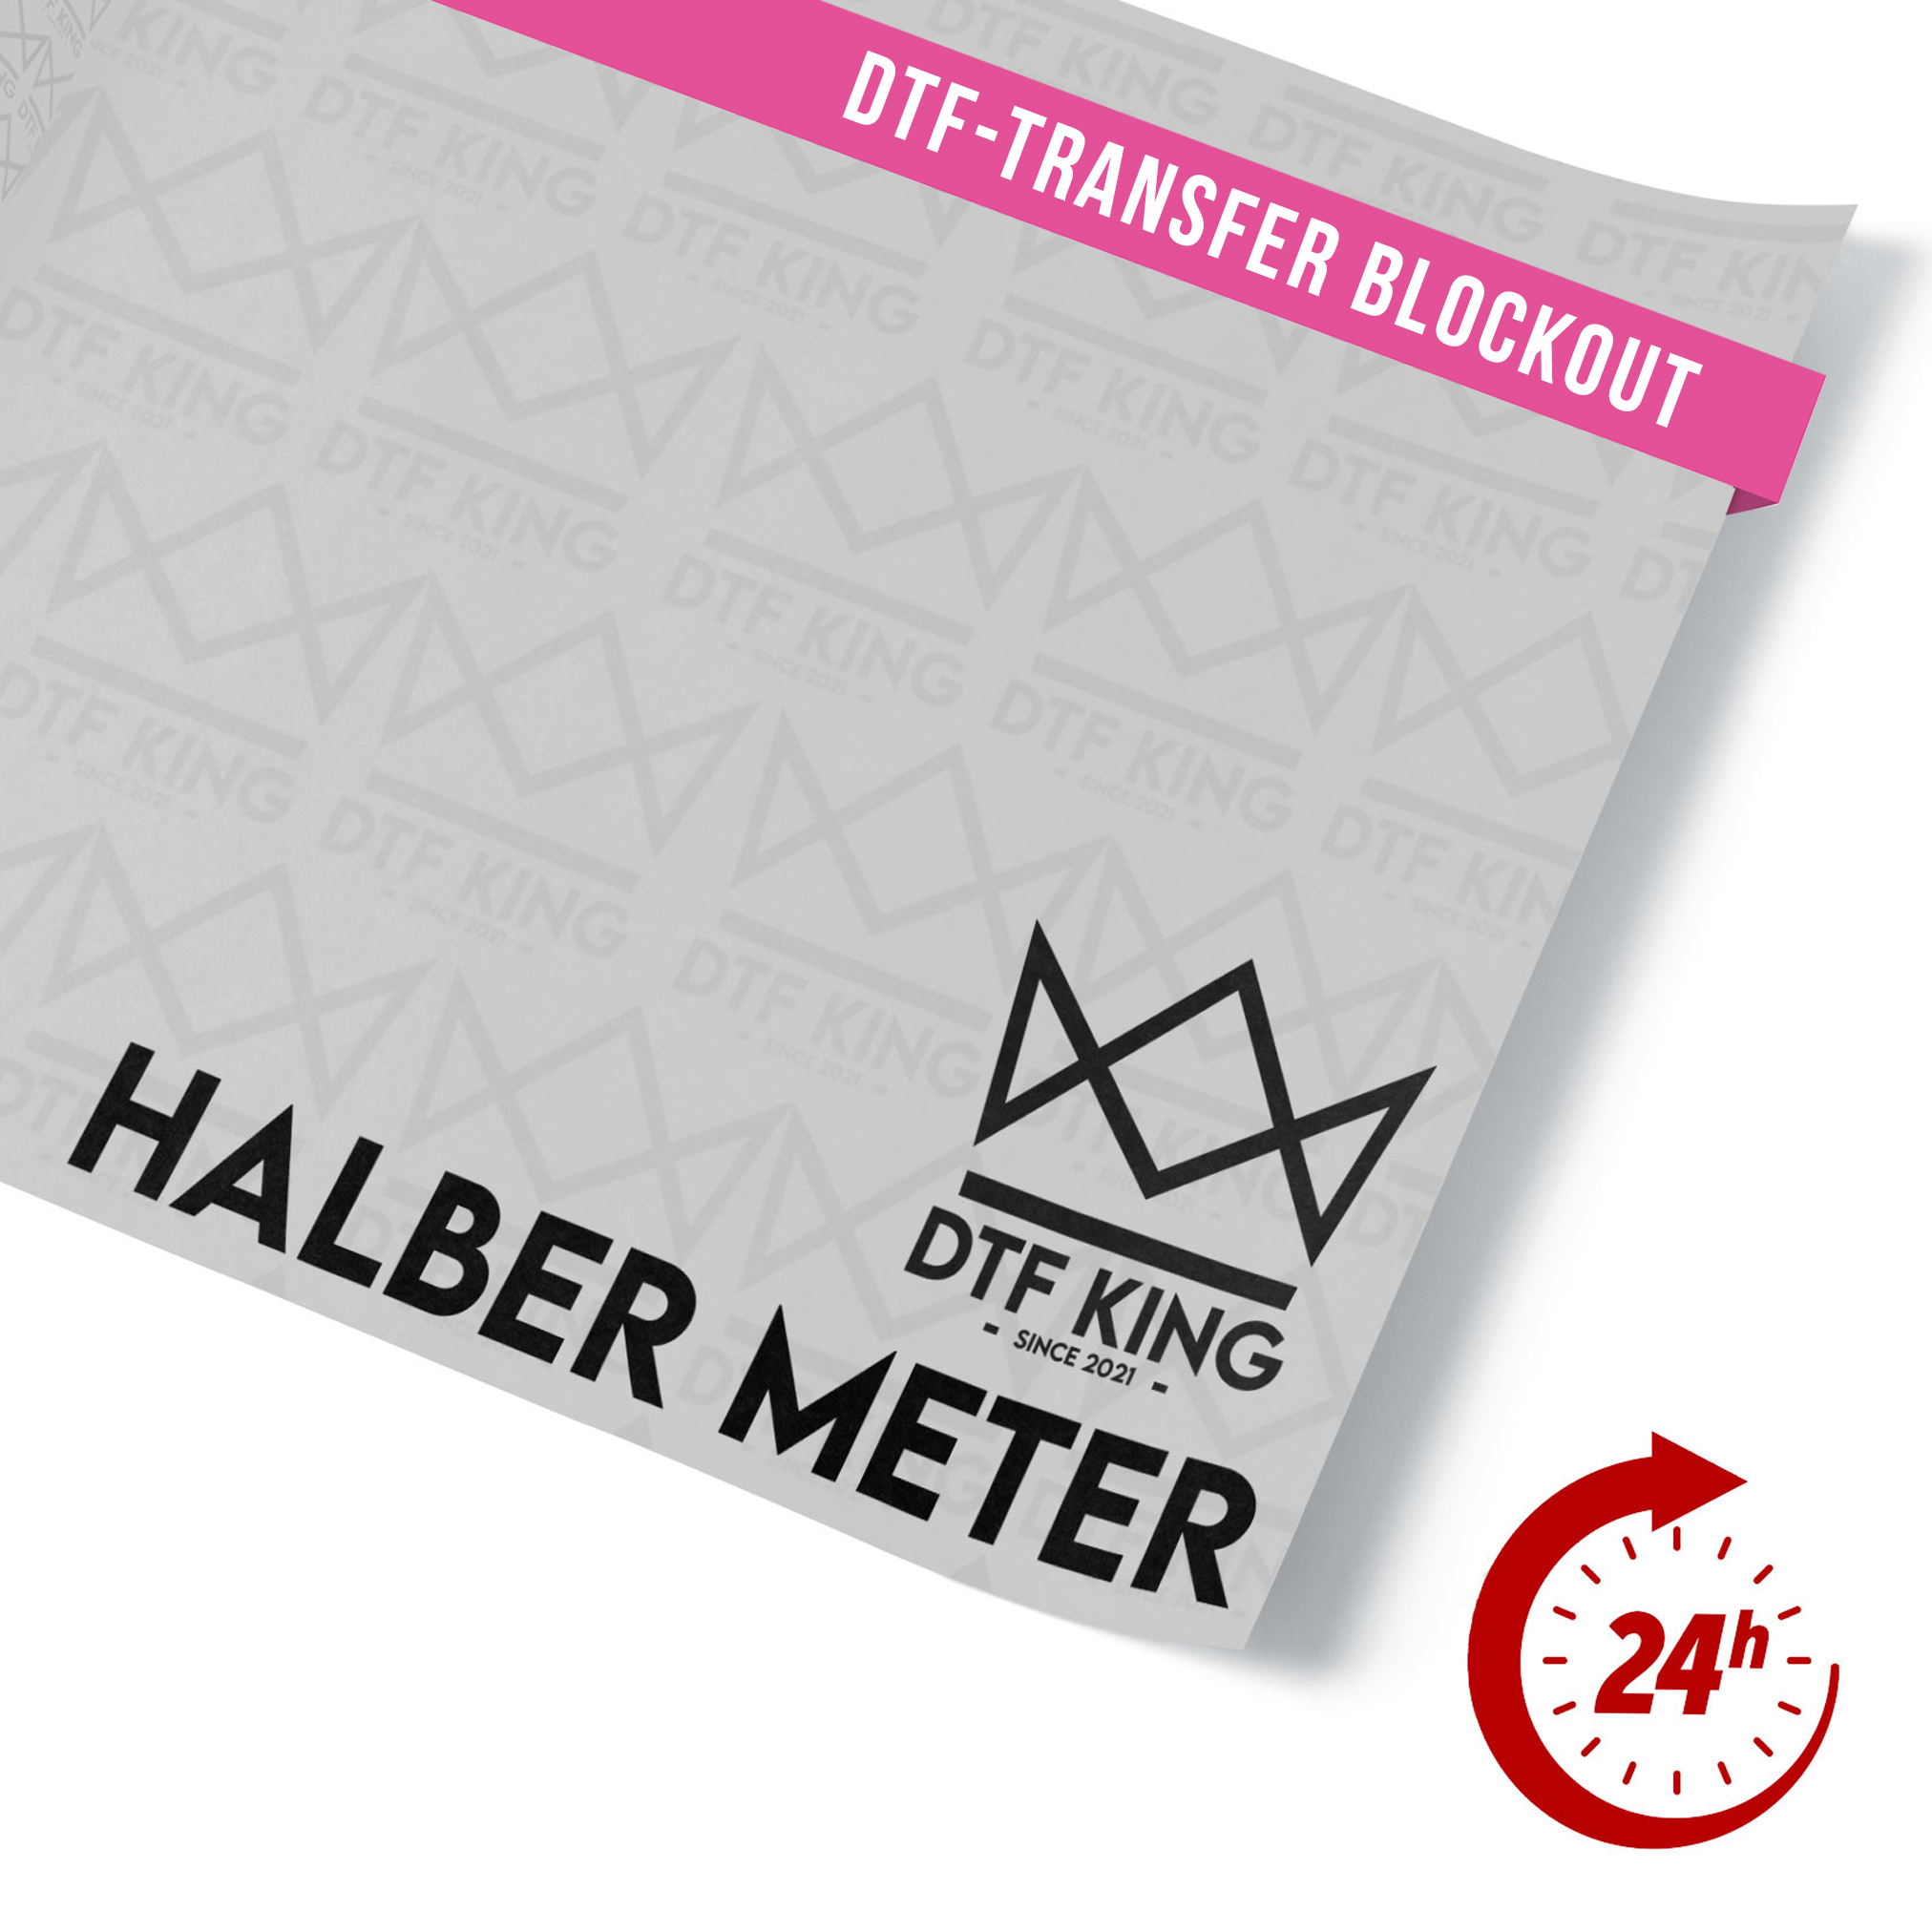 DTF-Transfer-Blockout-halber-Meter-Express